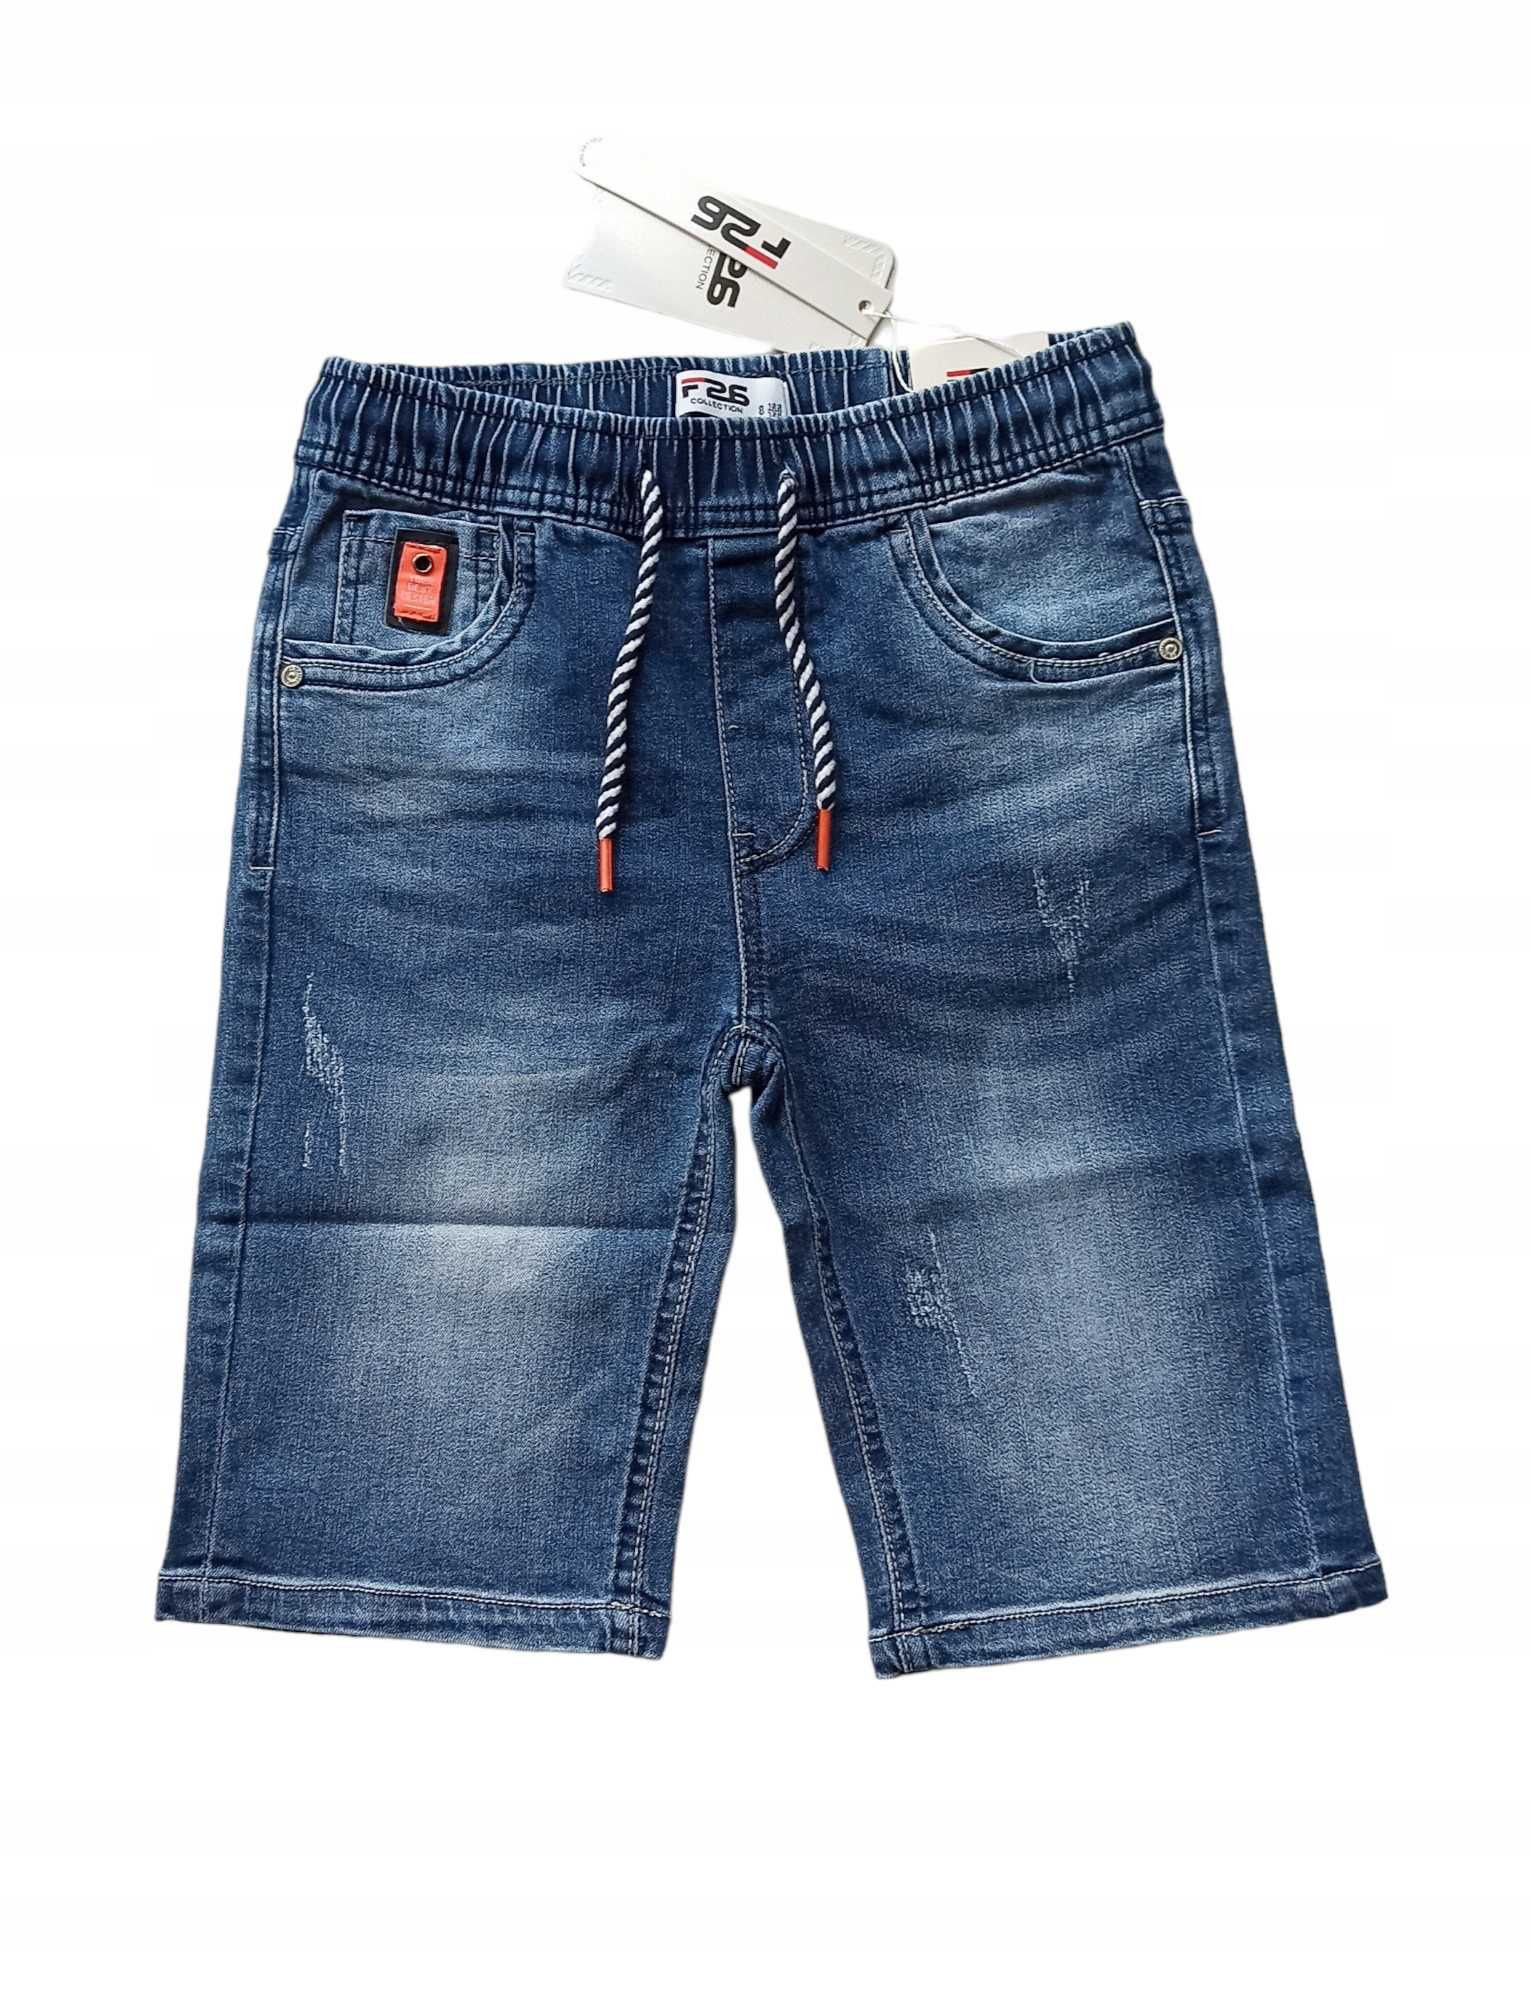 Krótkie spodenki szorty jeansowe dla chłopca nowy 98-104